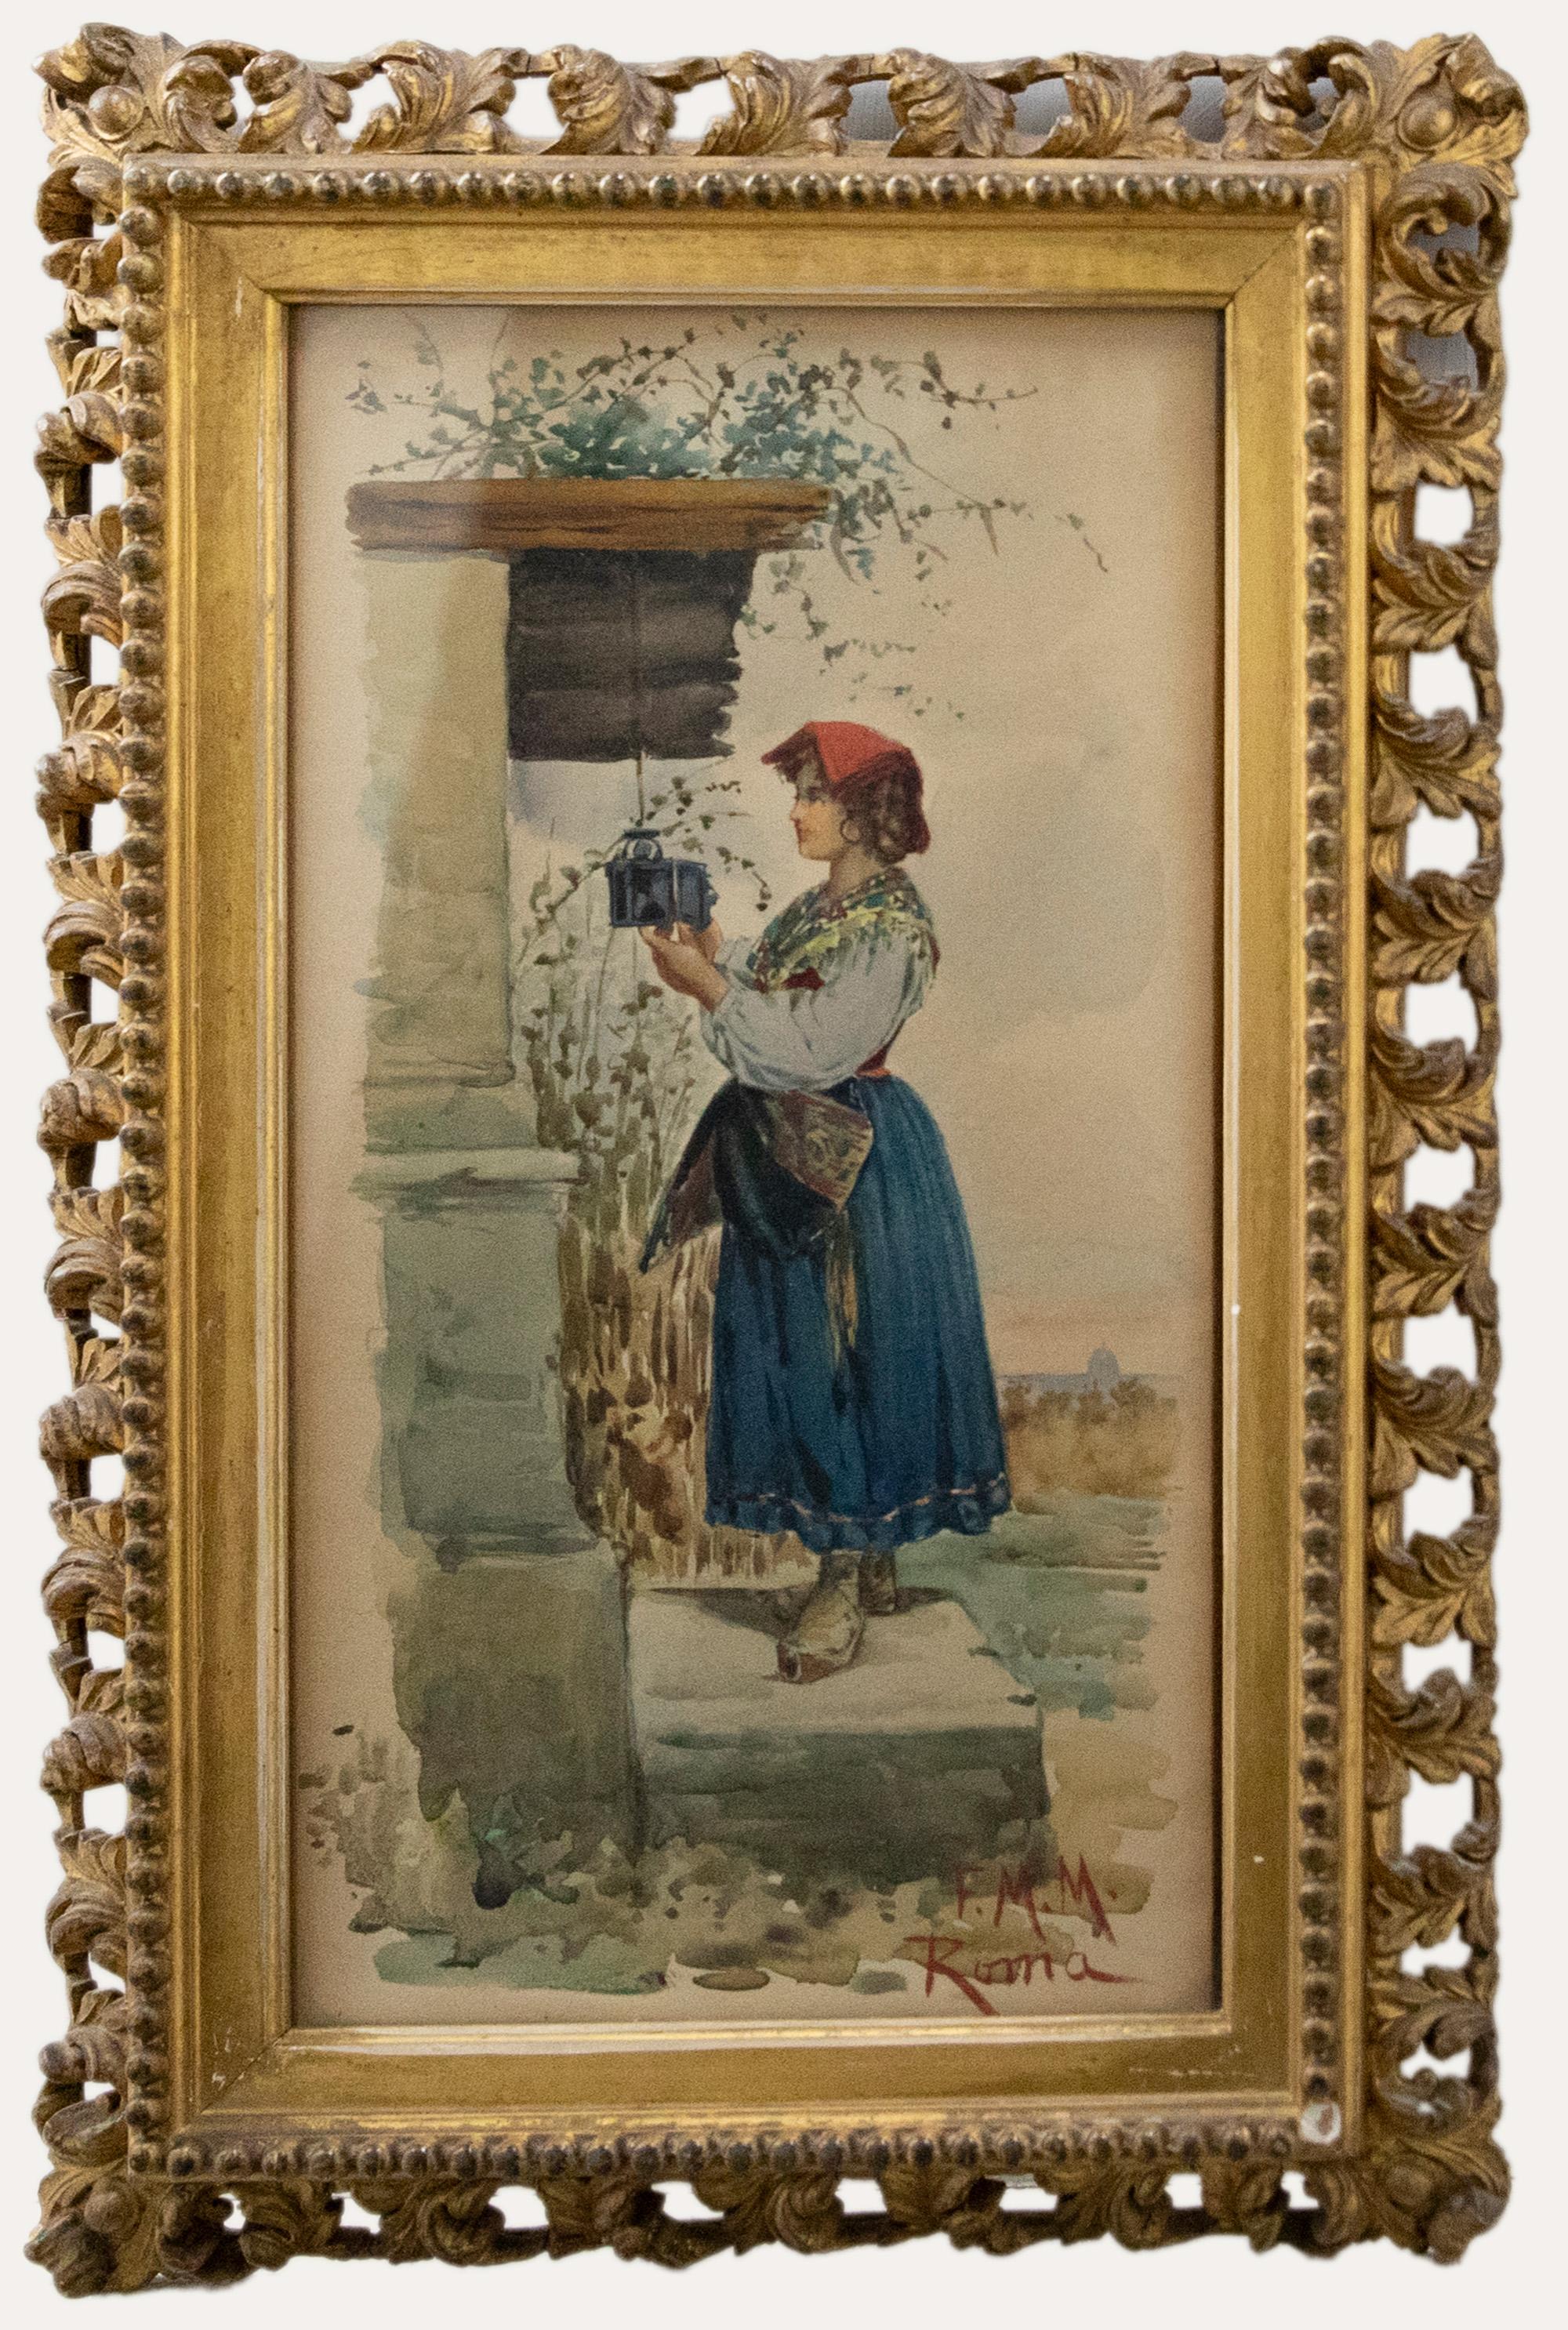 Eine charmante Studie einer italienischen Frau, die die Öllampe vor ihrem Haus ersetzt. Sie trägt traditionelle, farbenfrohe Kleidung und eine rote Kopfbedeckung. Signiert mit Initialen und unten rechts mit "Roma" bezeichnet. Gut präsentiert in